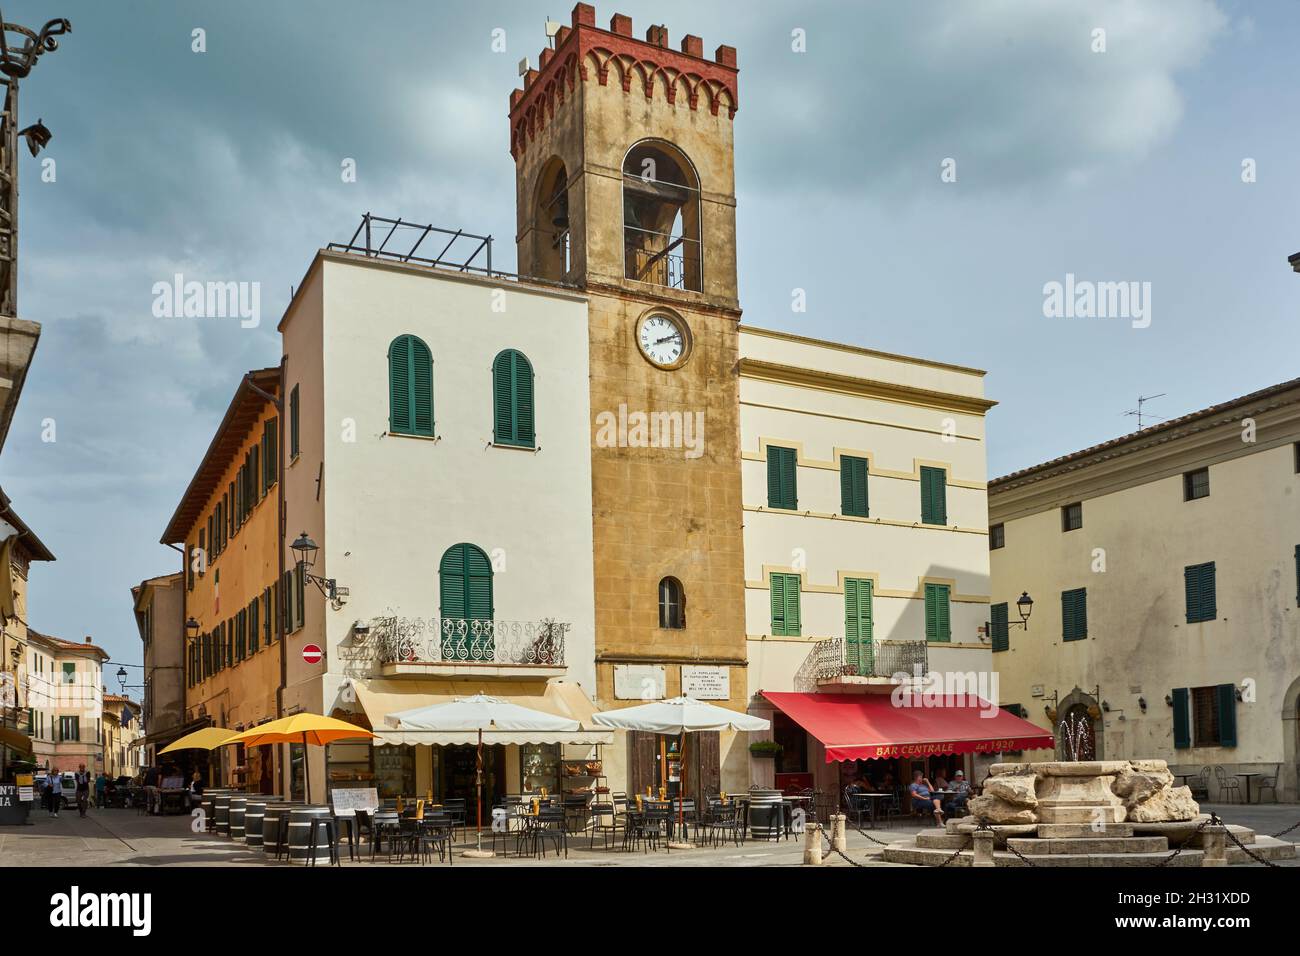 Palazzo del Capitano del Popolo, Piazza Mazzini mit Brunnen, Altstadt, Castiglione del Lago, Umbrien, Italien Stock Photo